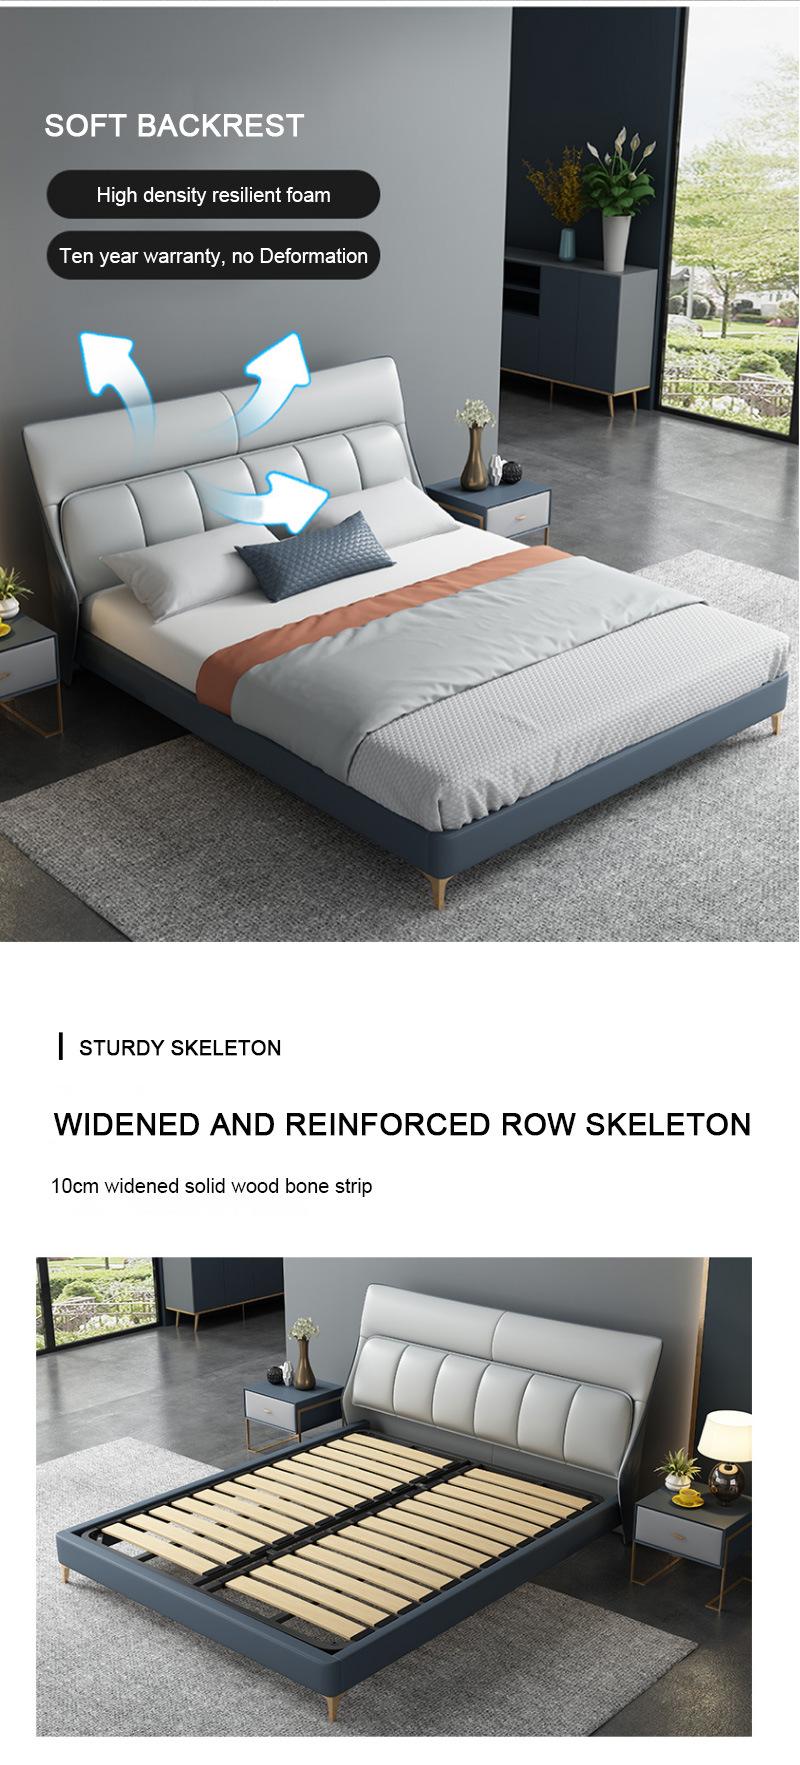 Luxury Bedroom Sets Furniture Wood Frame Leather King Bed